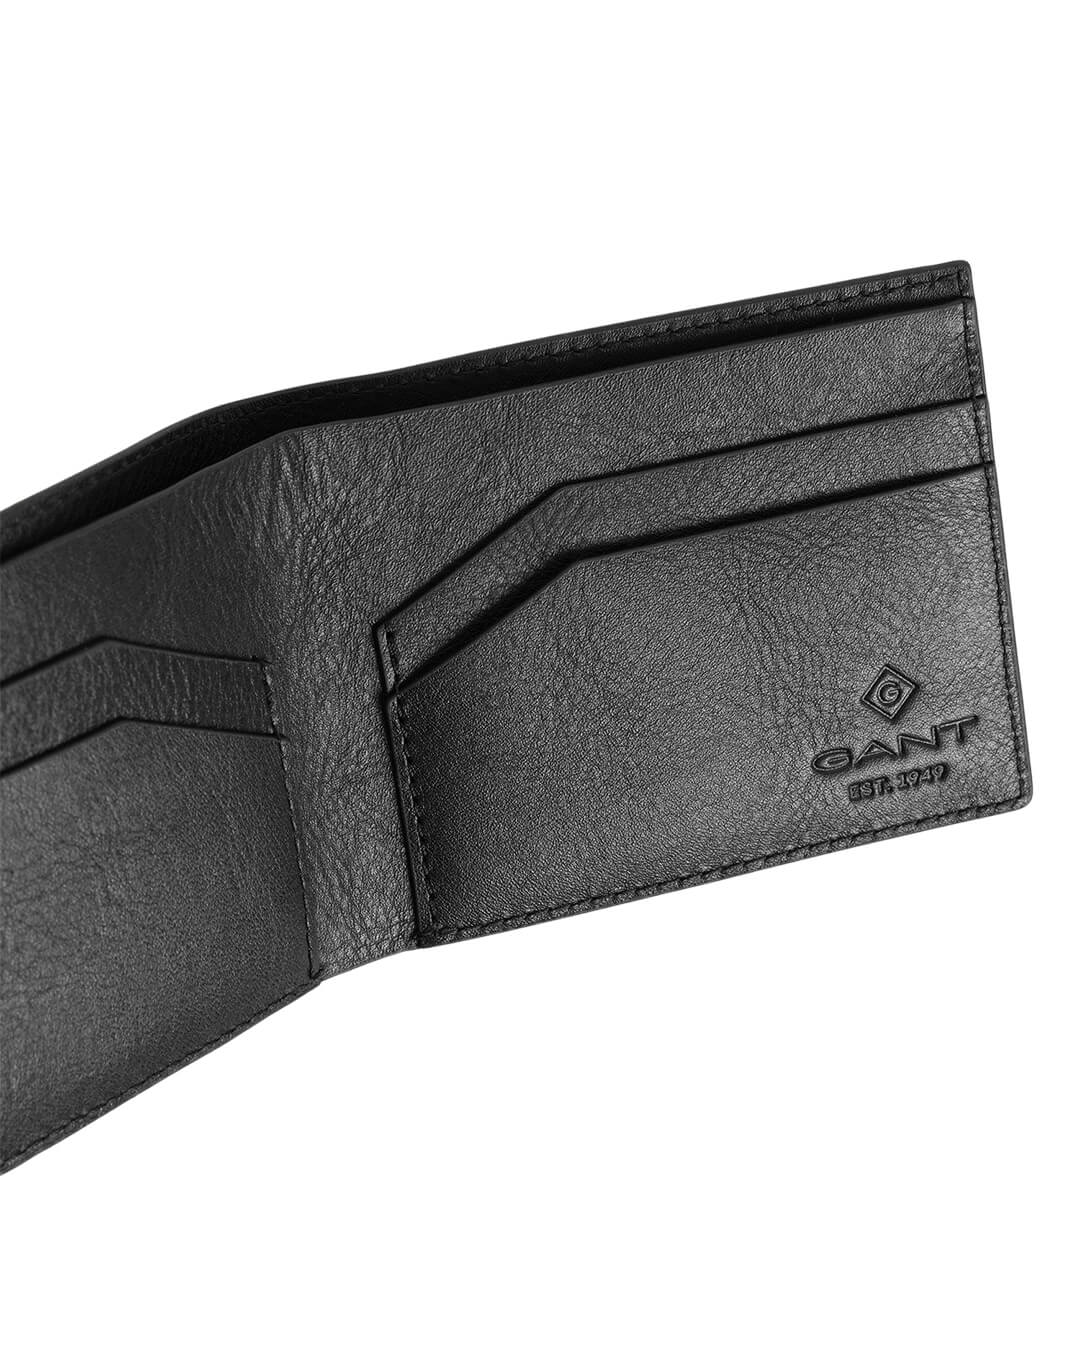 Gant Wallets ONE SIZE Gant Leather  Black Wallet